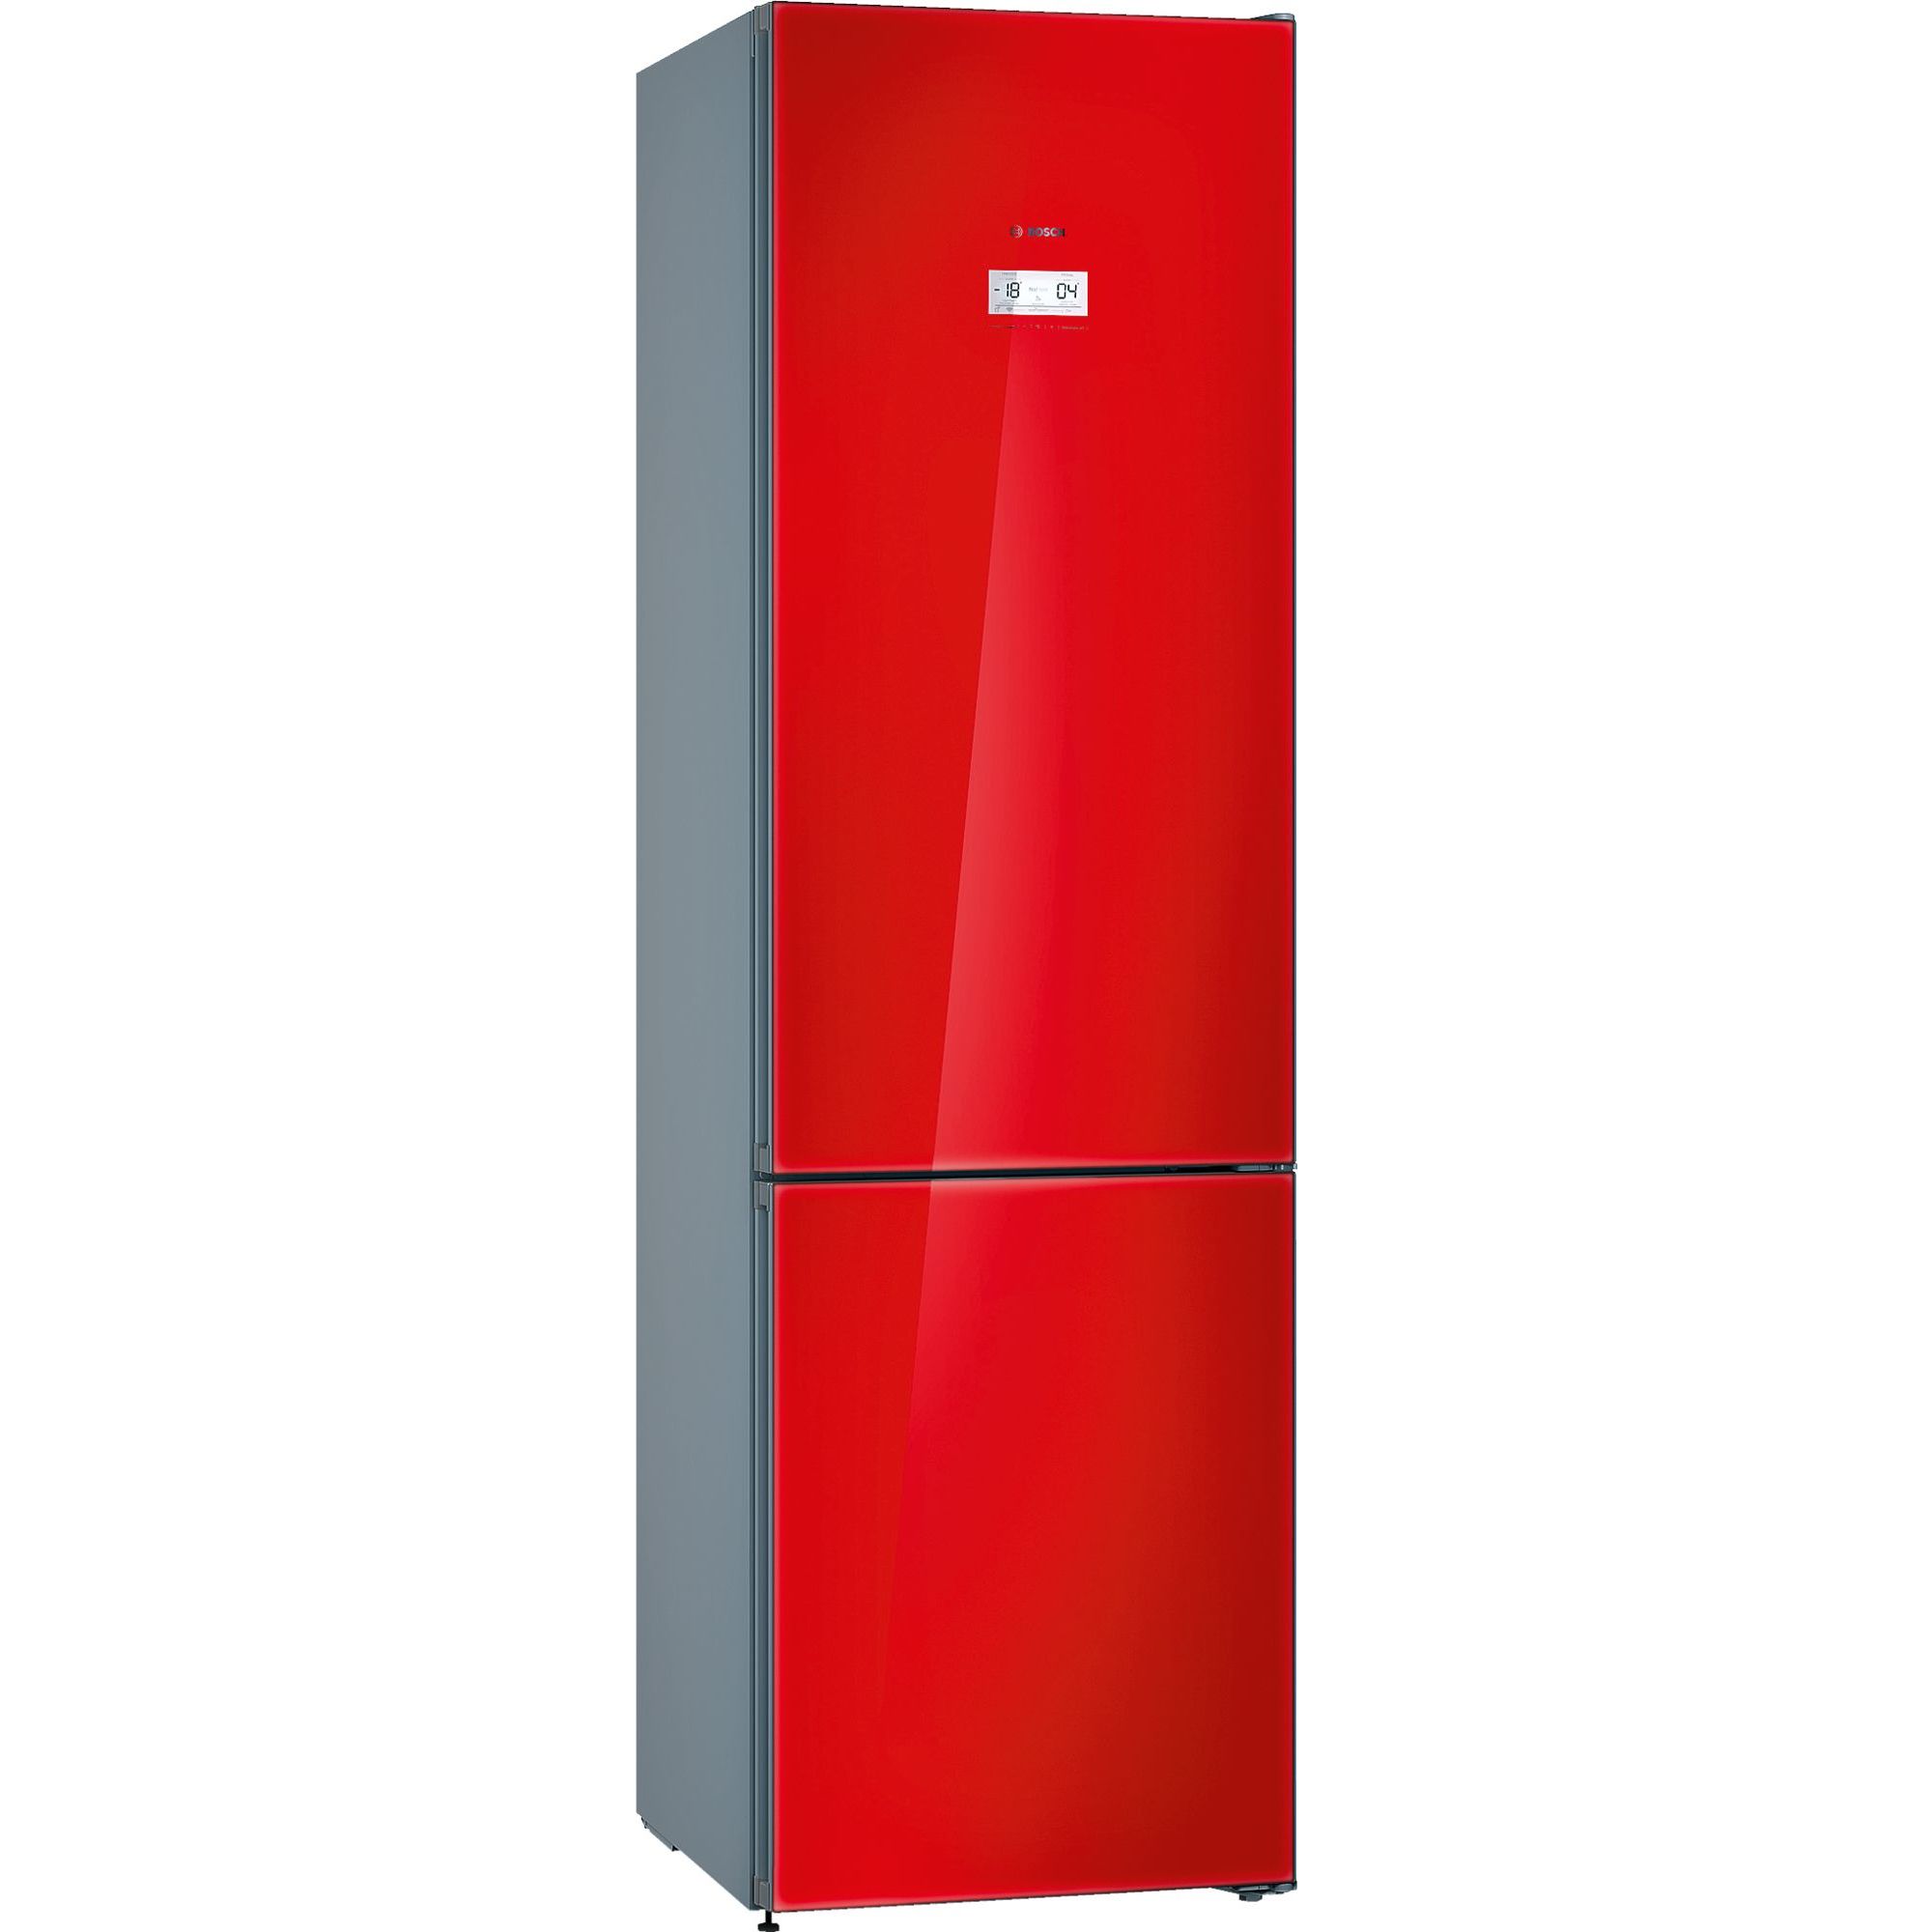 Интернет магазин холодильников в москве недорого. Холодильник бош kgn36s52. Холодильник бош kgn39sq10r. Bosch kgn39lr3ar. Холодильник Bosch kgn39.